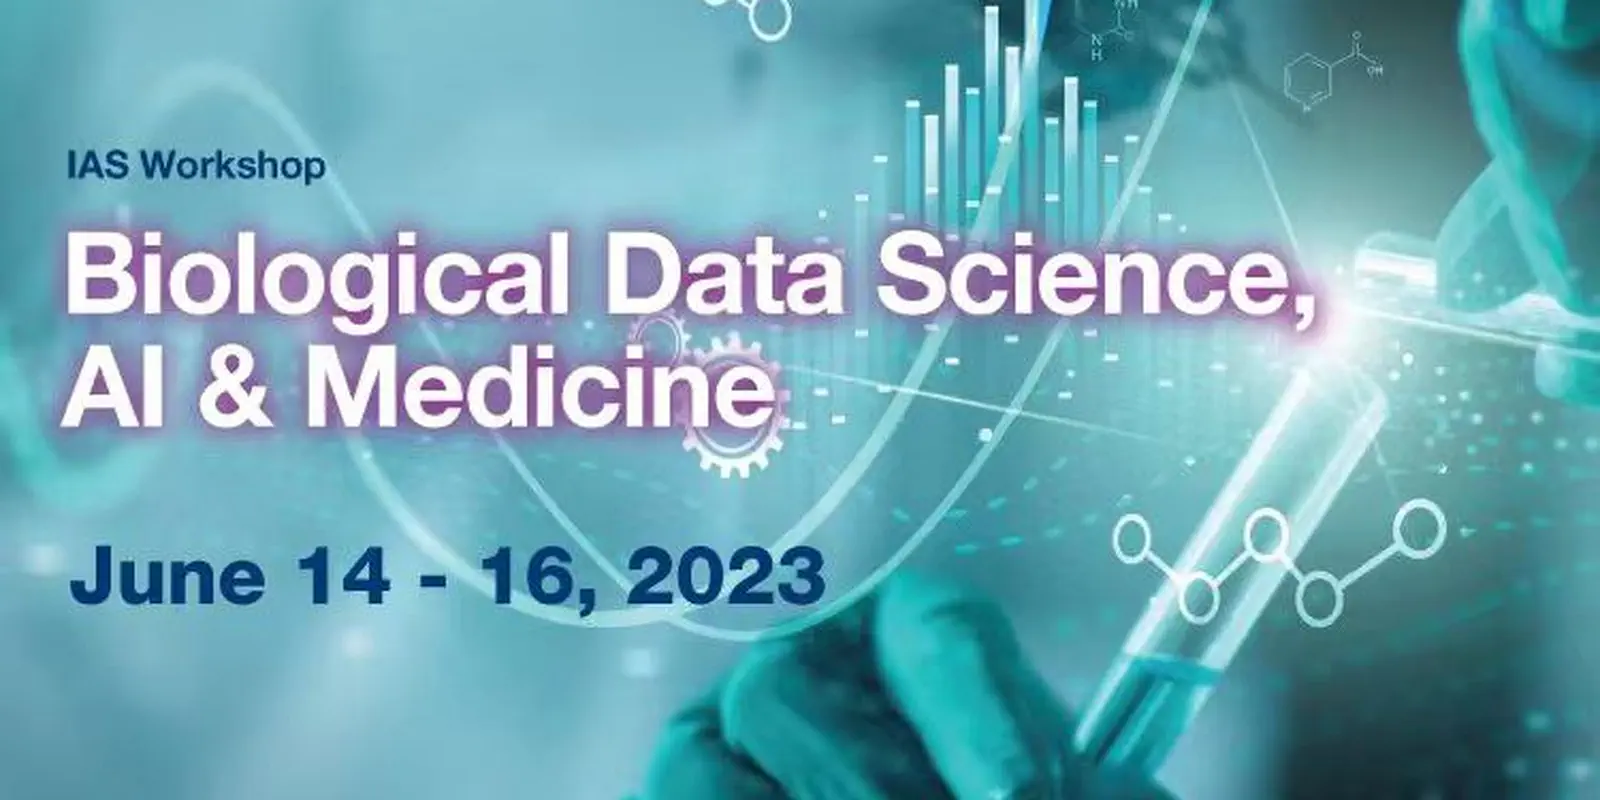 [IAS 2023 Workshop] Call for Registration: Biological Data Science, AI & Medicine Workshop